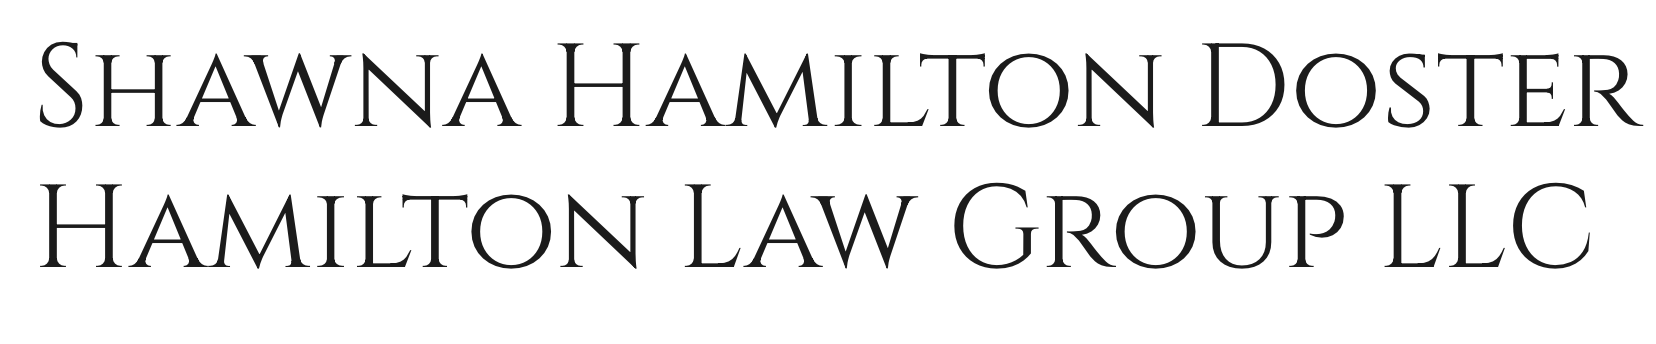 Shawna Hamilton Doster Logo